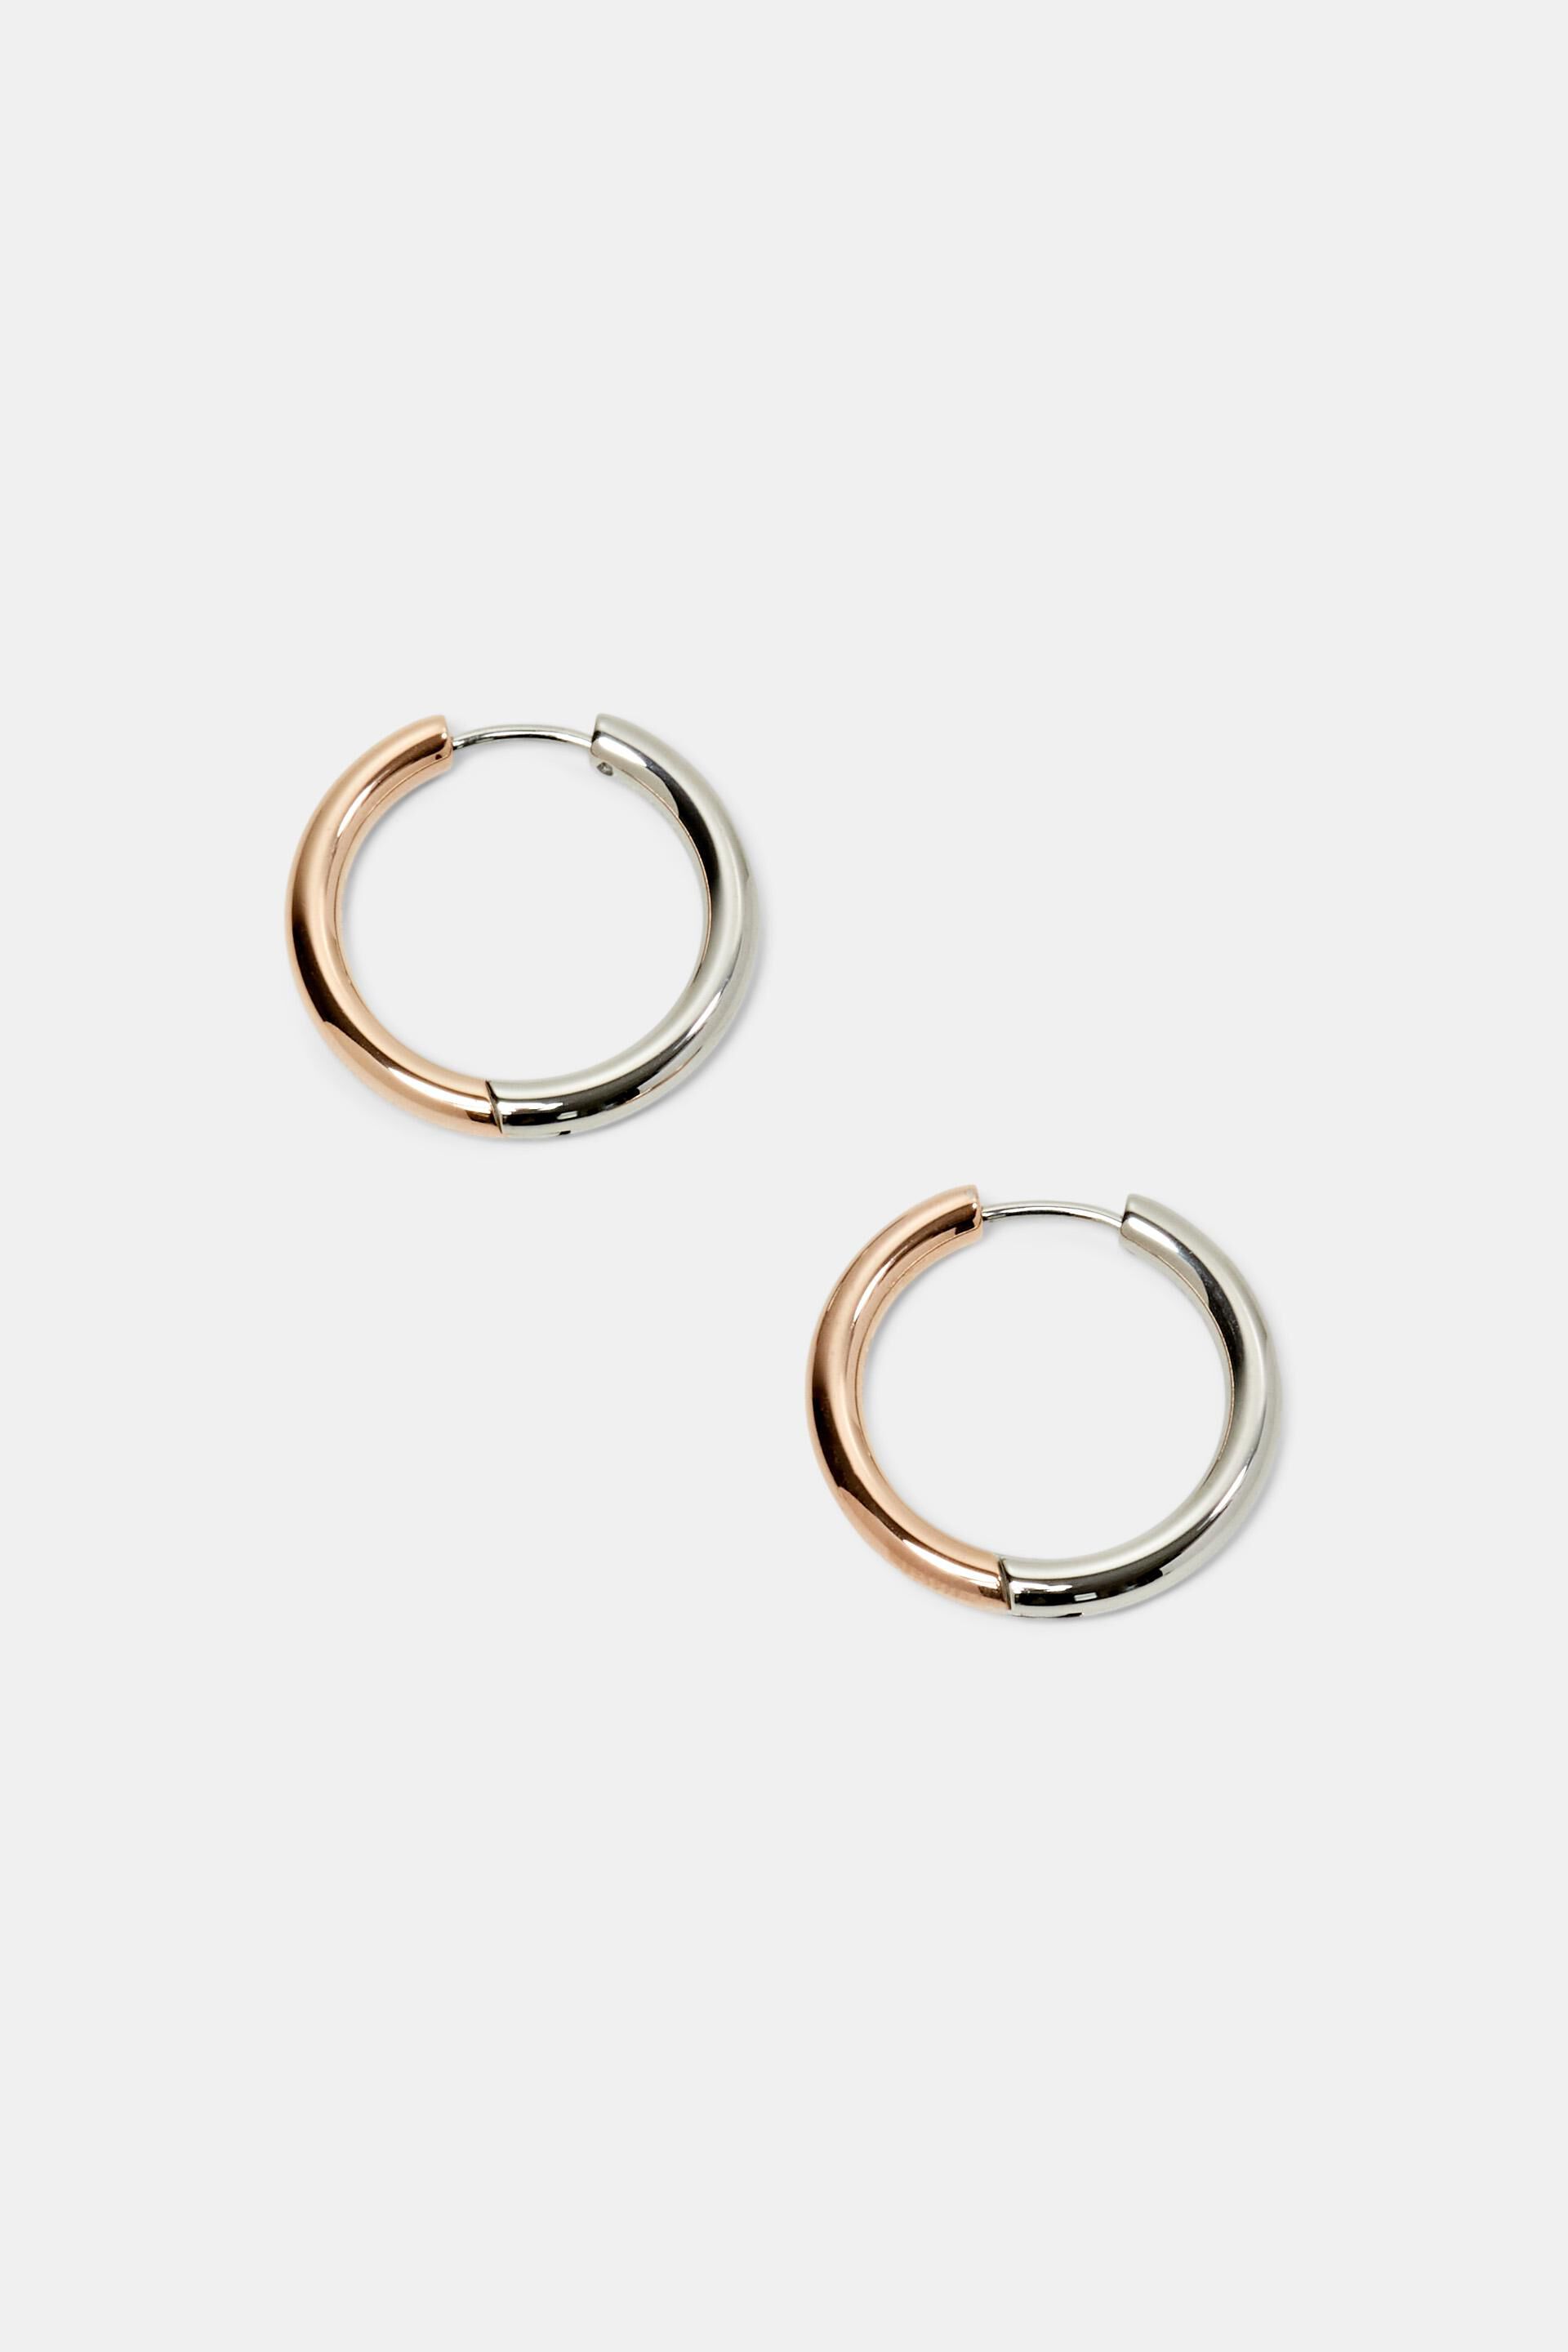 Esprit Online Store Bi-color hoop earrings, stainless steel